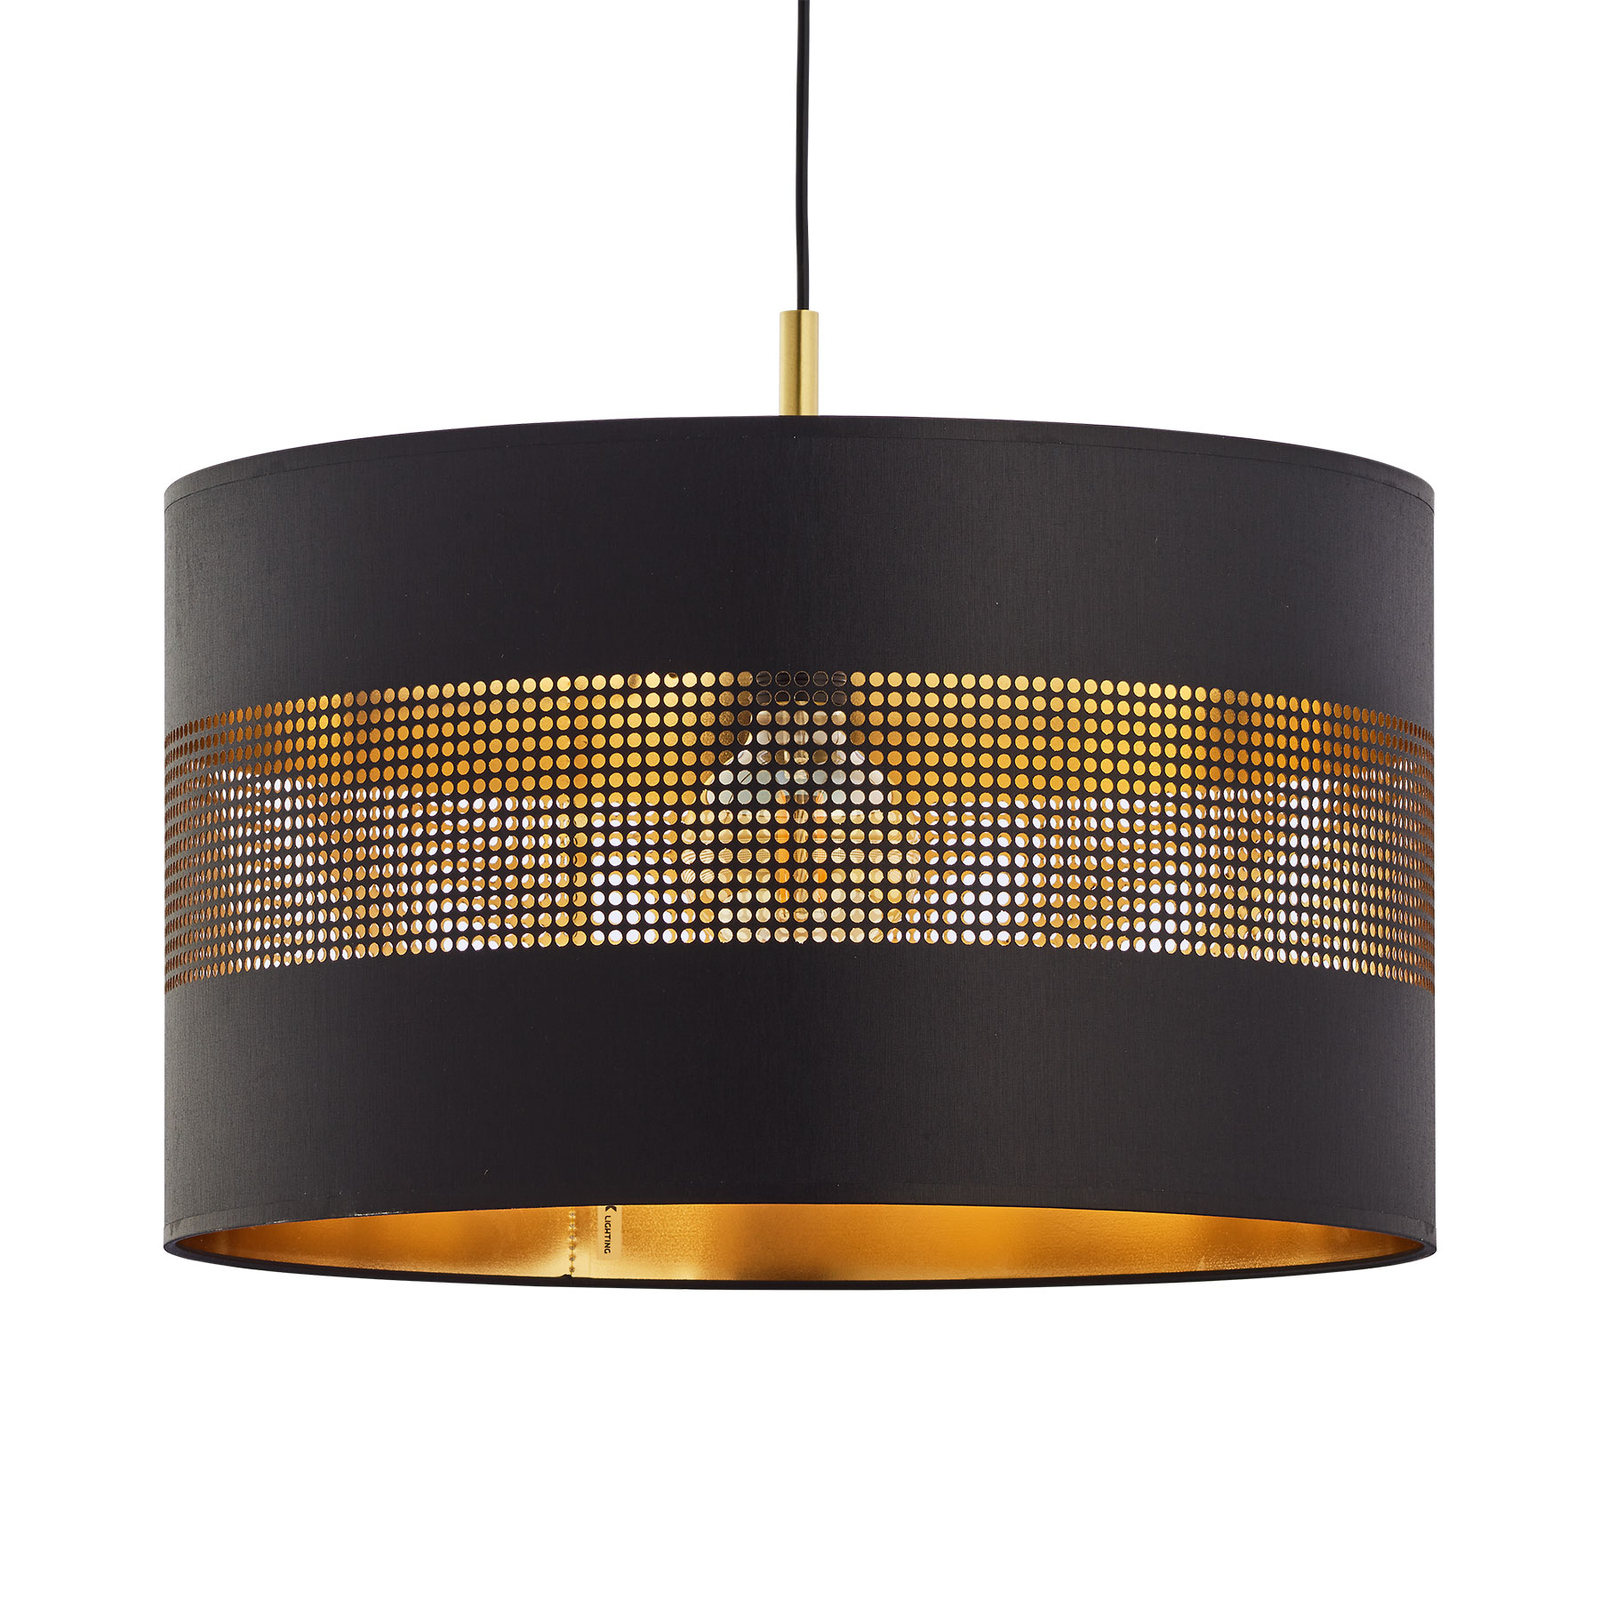 Hanglamp 1-lamp, zwart/goud | Lampen24.nl